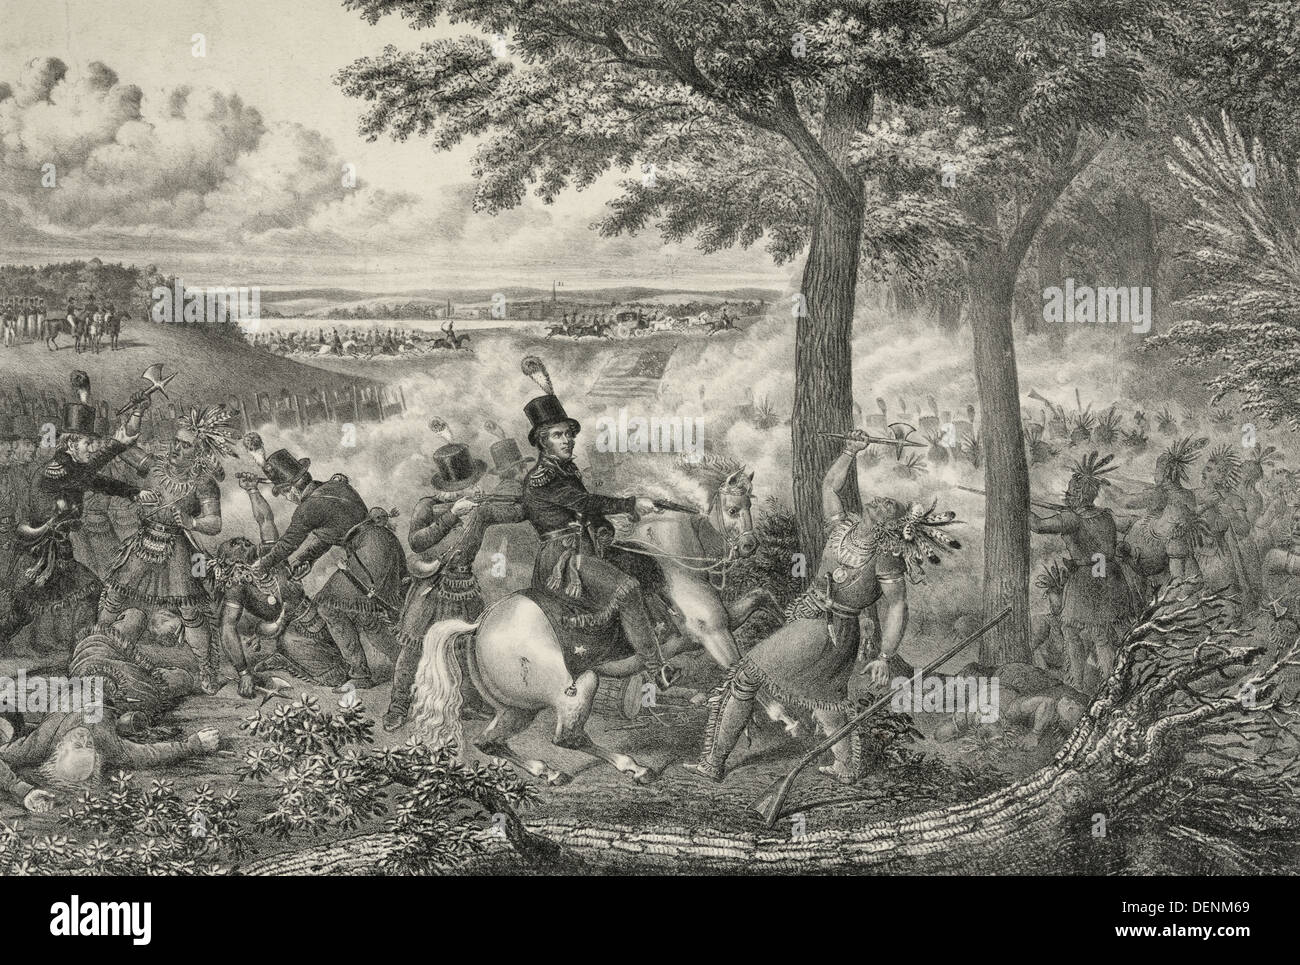 La battaglia del Tamigi - forze americane combattimenti Tecumseh indiano della Confederazione. Nel centro Col. R. M. Johnson germogli Tecumseh che ha sollevato il suo tomahawk. Ottobre 5, 1813 Foto Stock